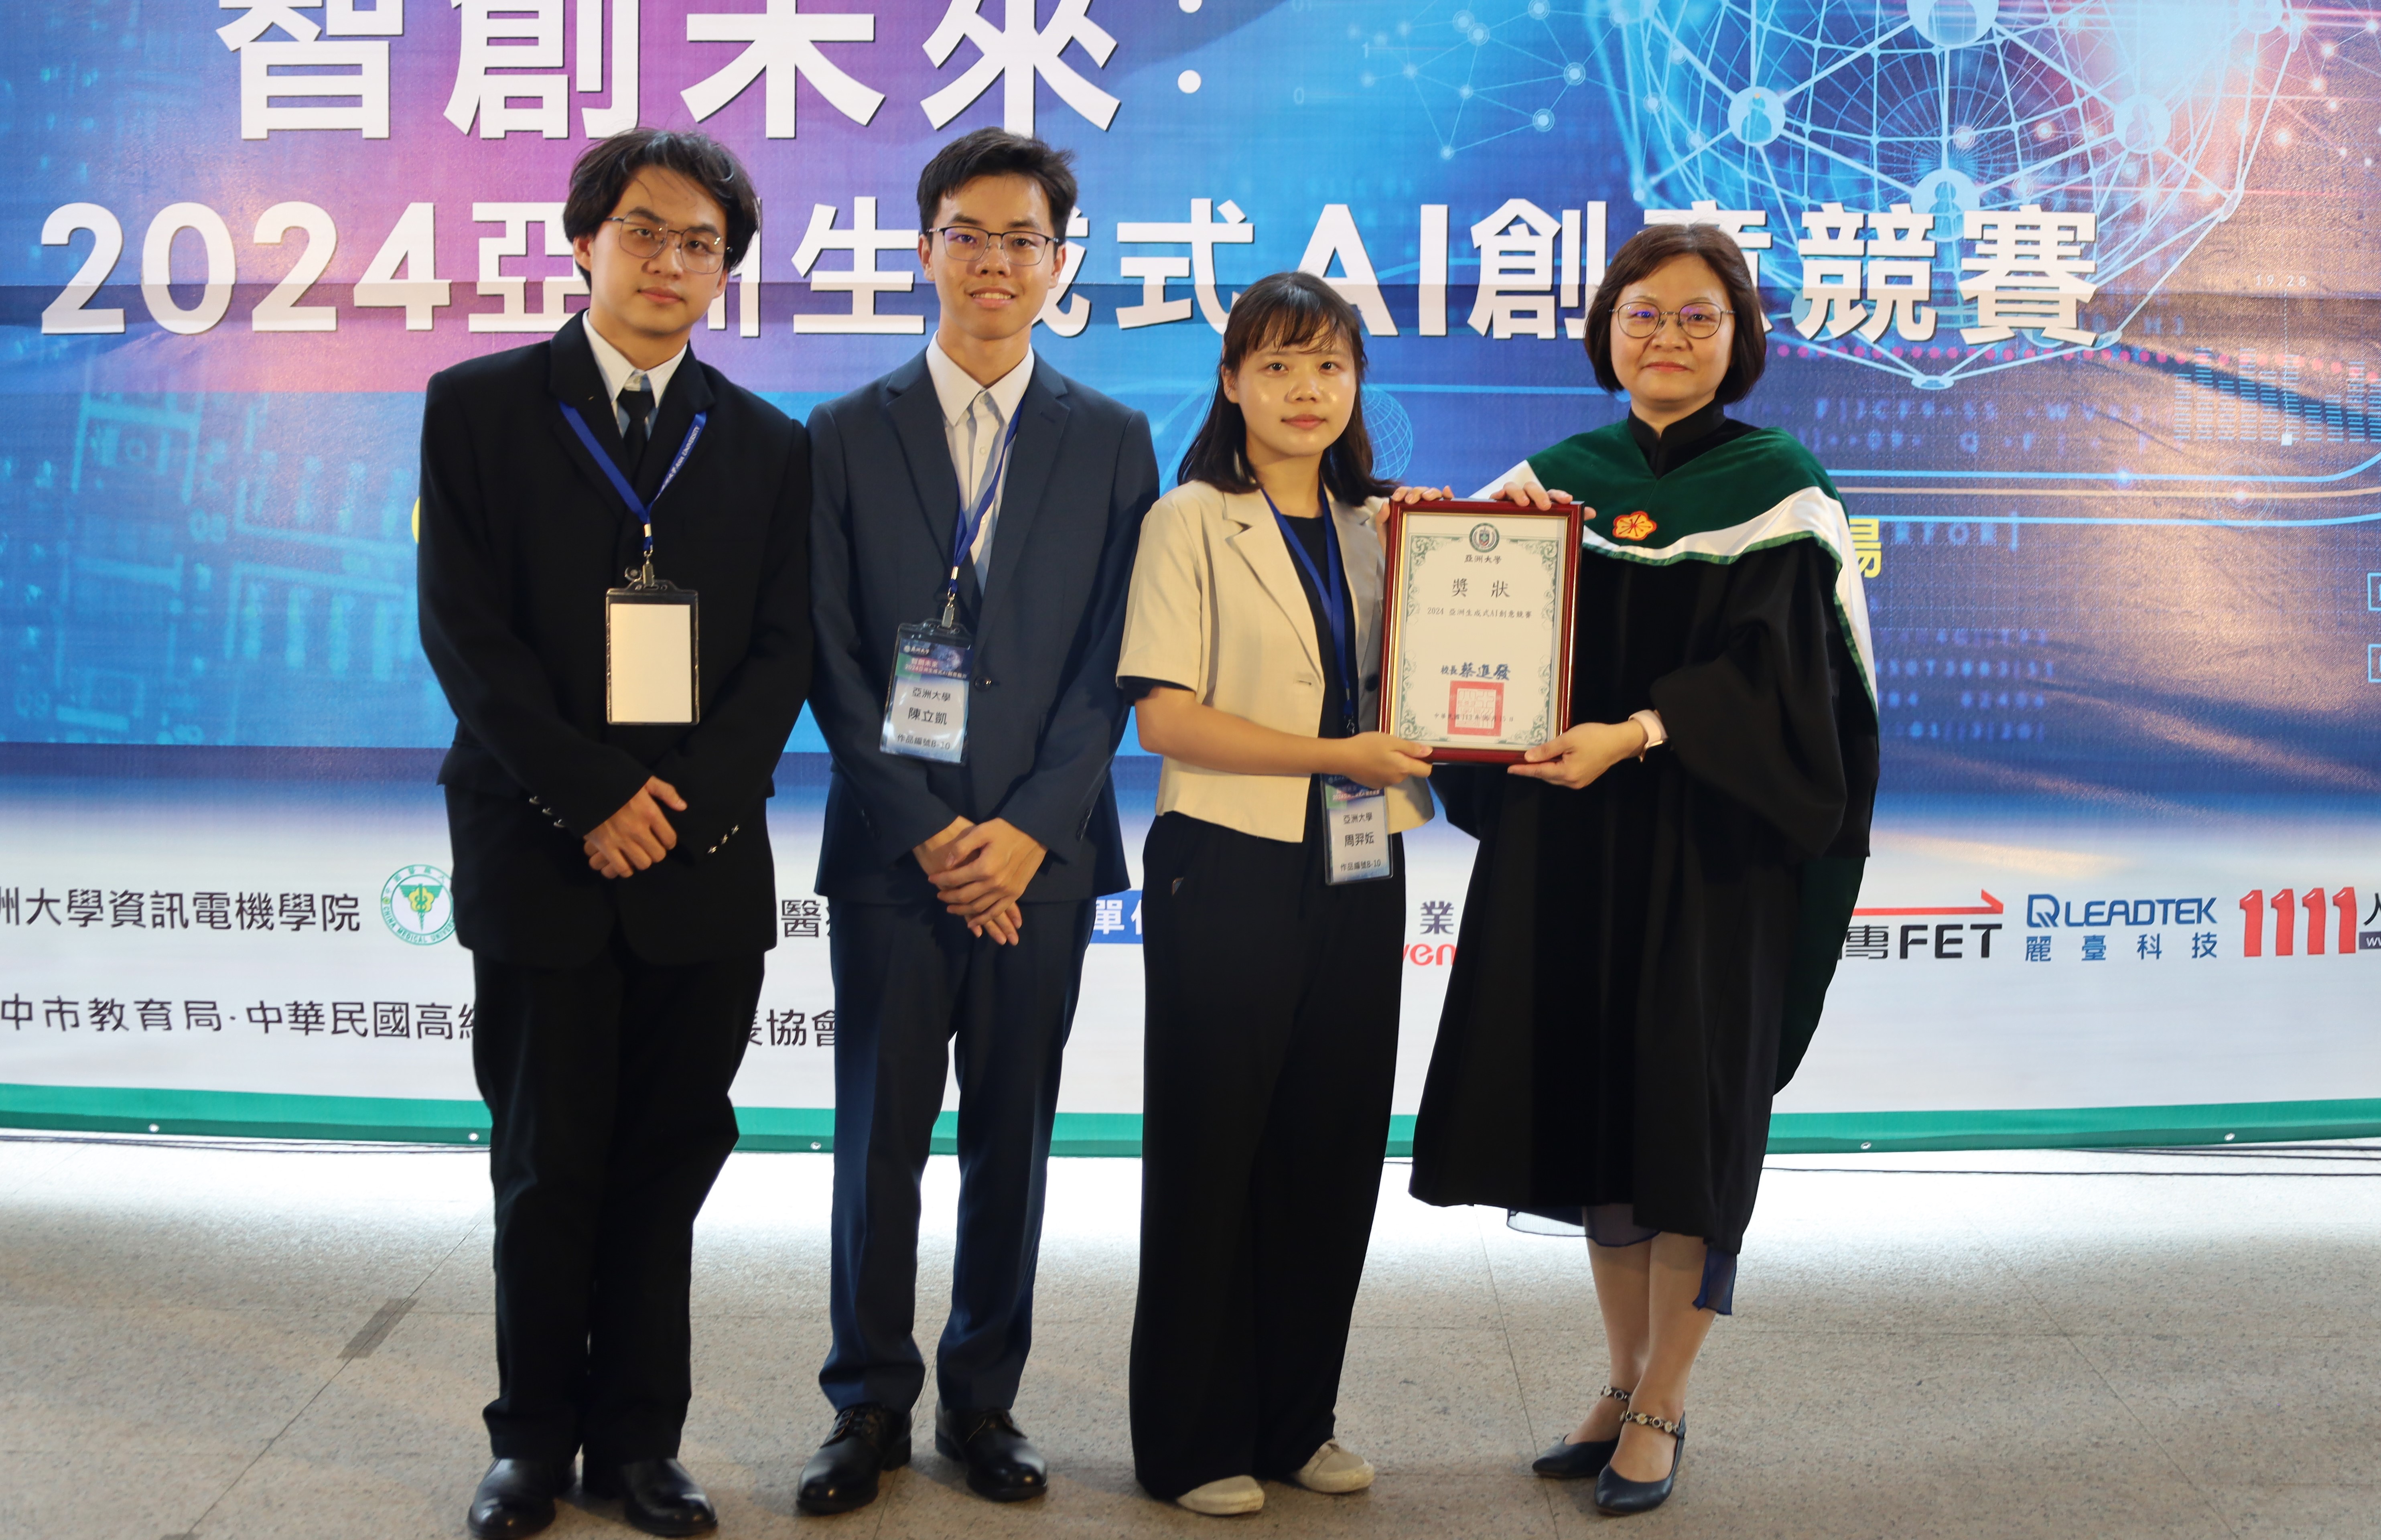 圖為亞大護理學院長吳樺姍(右)，頒獎給獲5萬元企業創意獎的亞大同學。